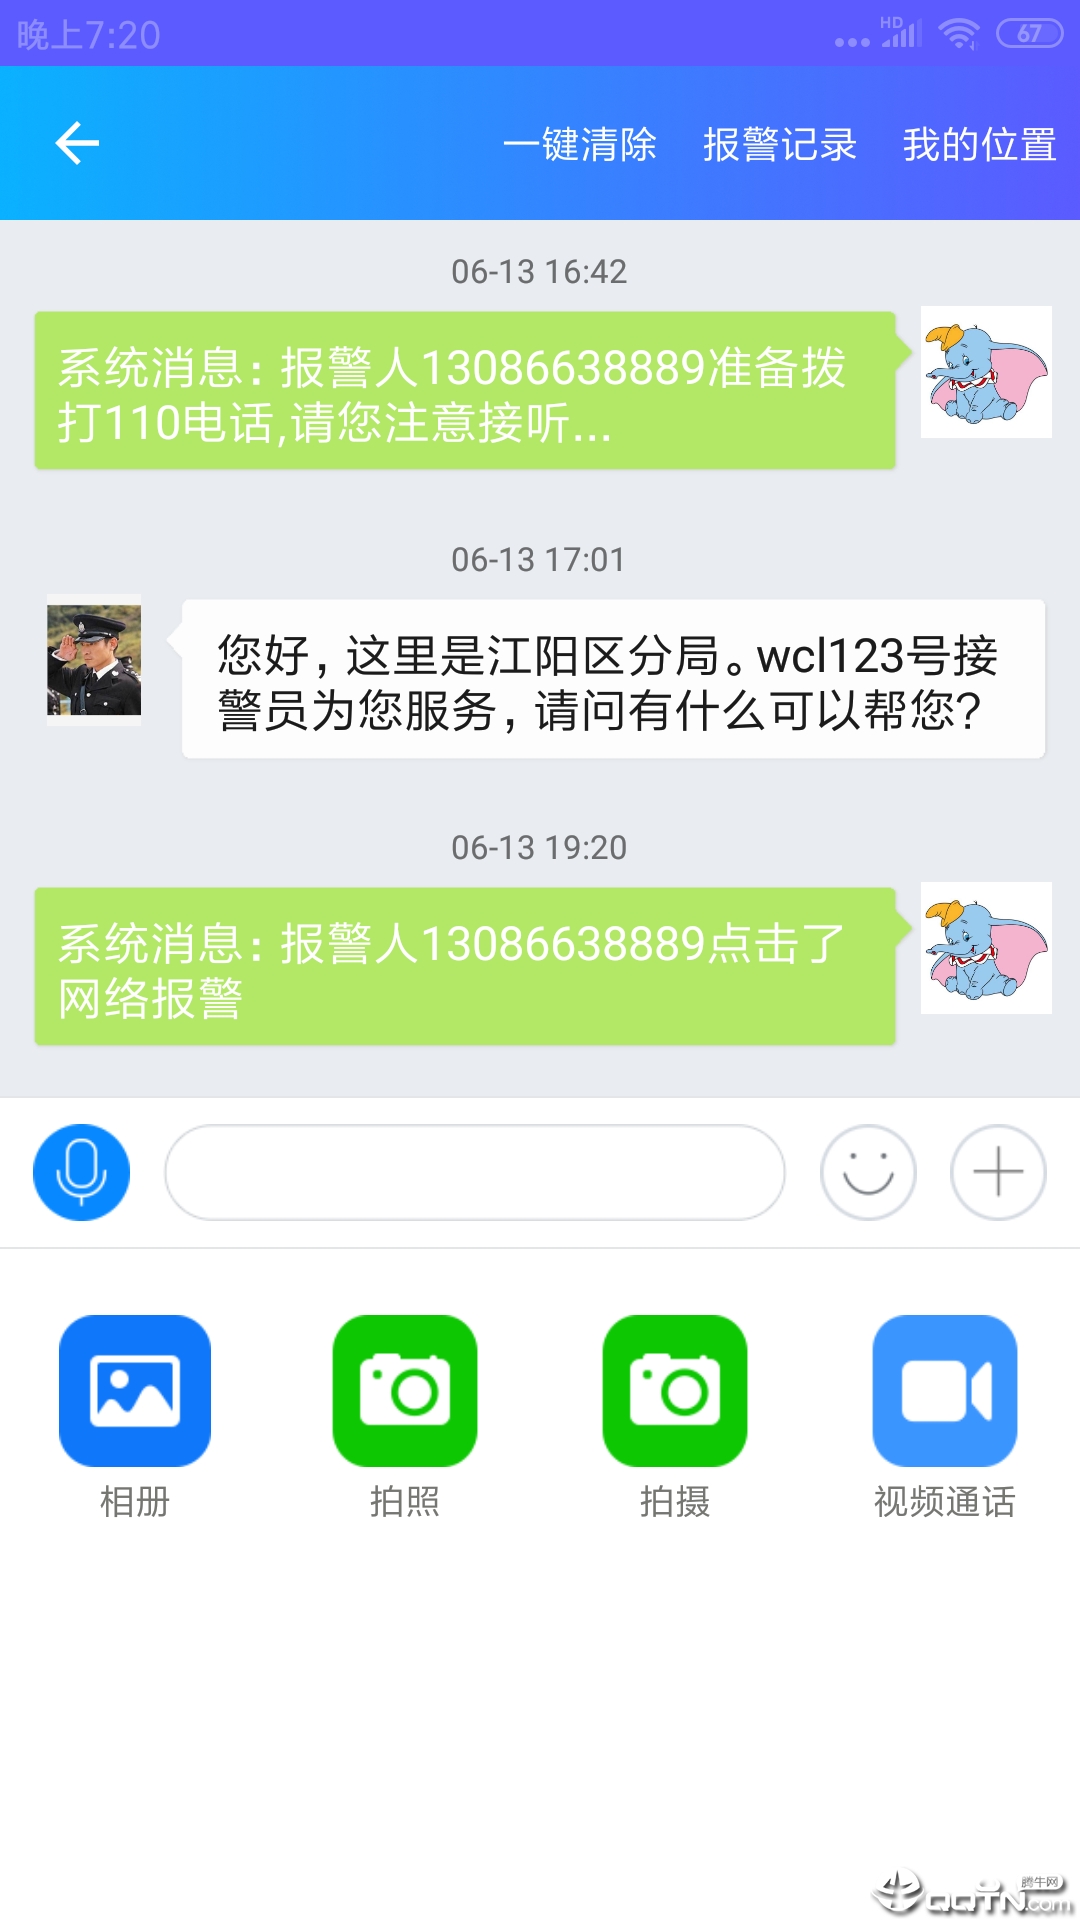 台州公安110appv3.1.100701 最新版(TZNET110)_台州公安110安卓版下载